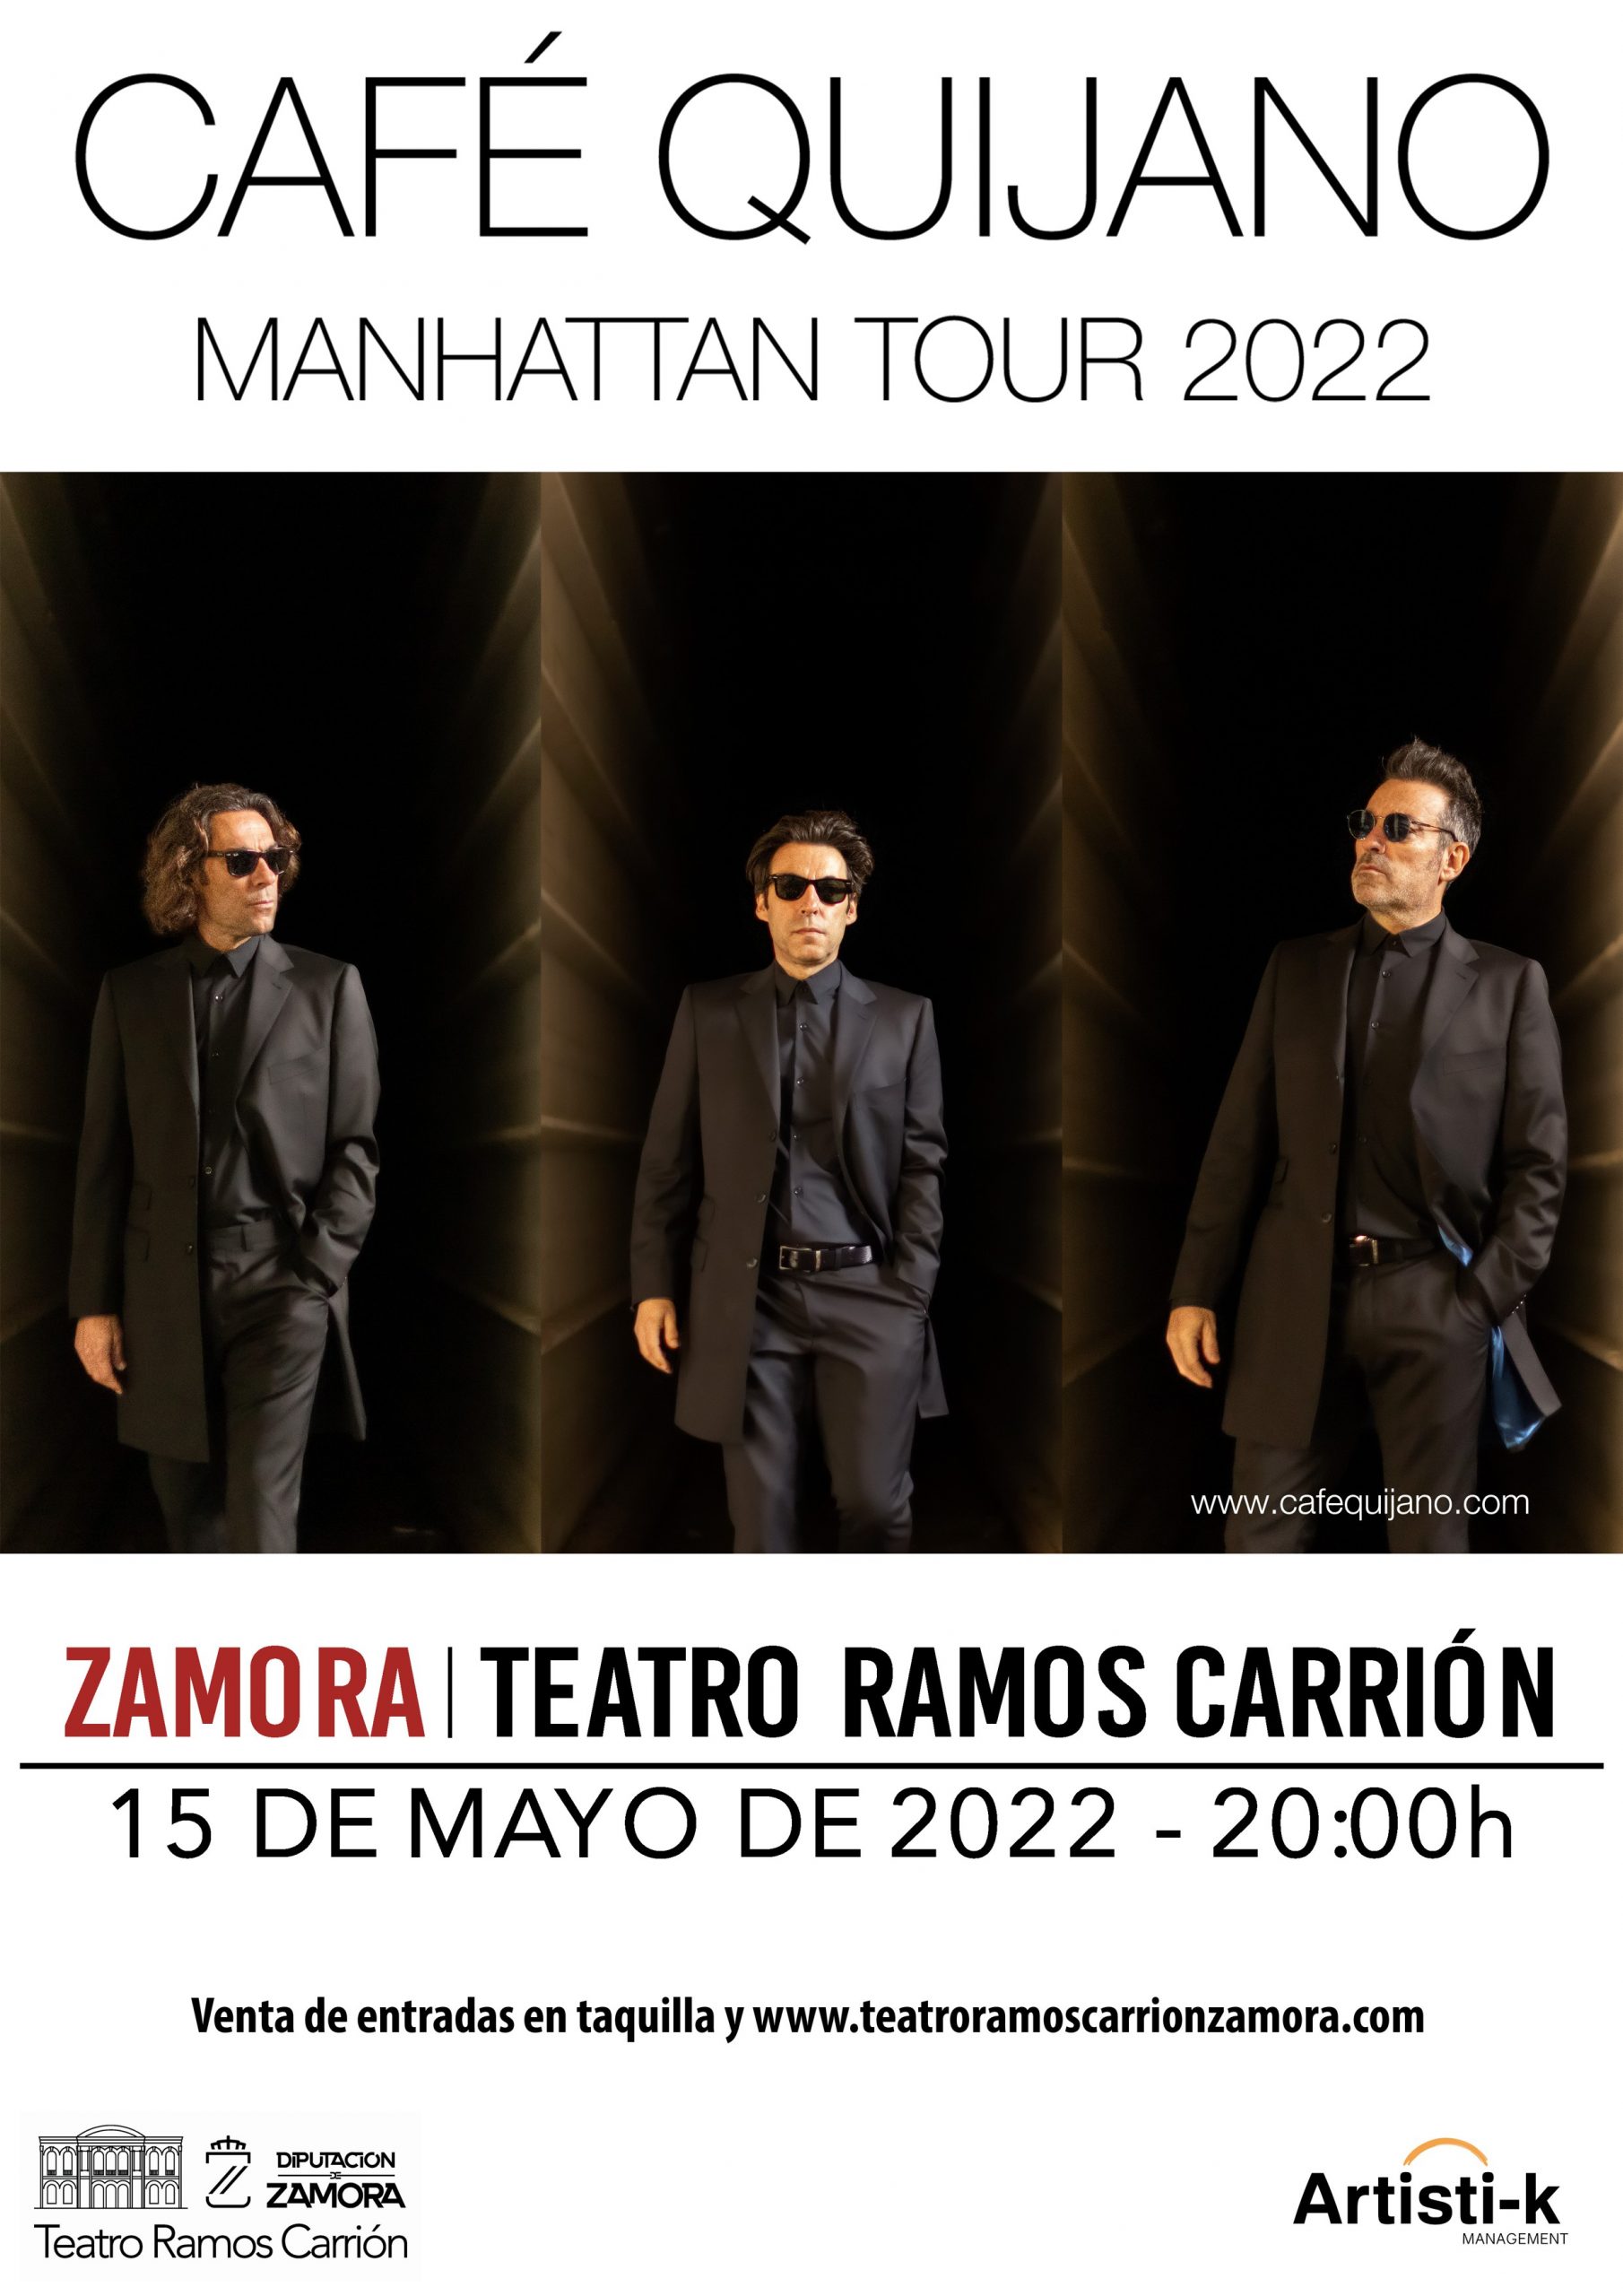 Café Quijano – Manhattan Tour 2022. Zamora Inquieta. Teatro Ramos Carrión